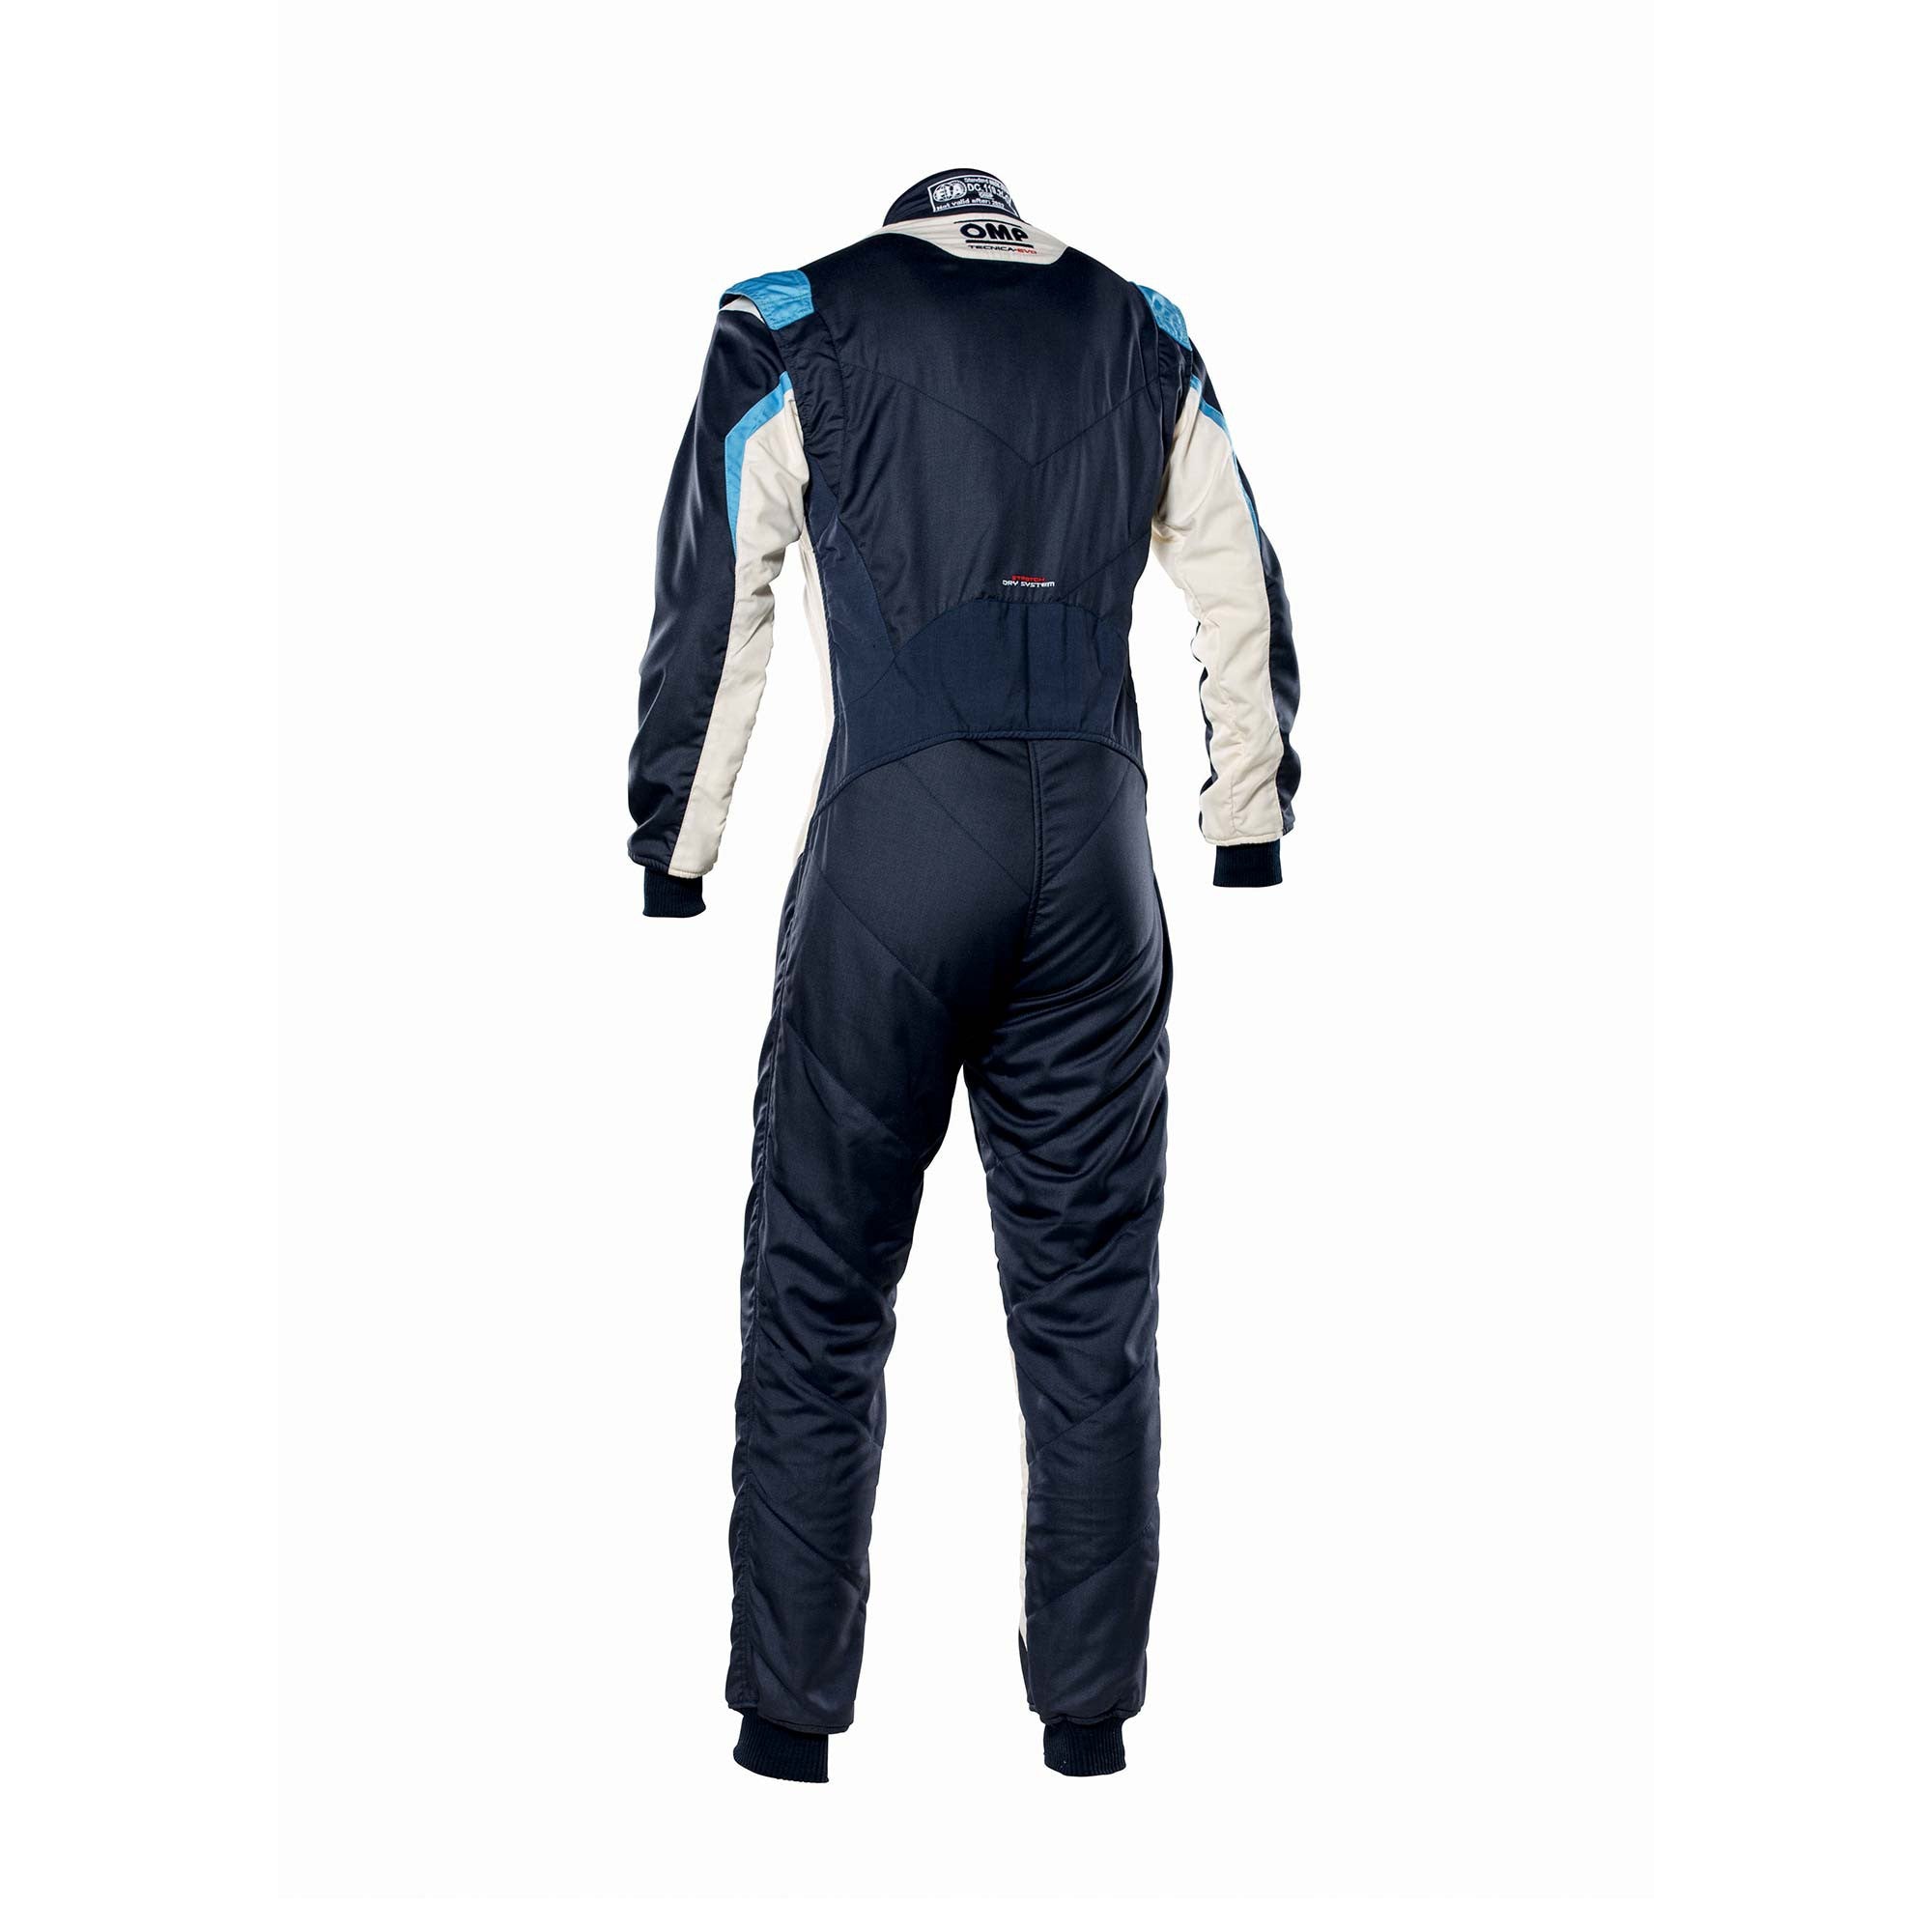 OMP IA0-1859-B01-246-48 Racing suit TECNICA EVO MY2021, FIA 8856-2018, navy blue/white/grey/cyan, size 48 Photo-1 